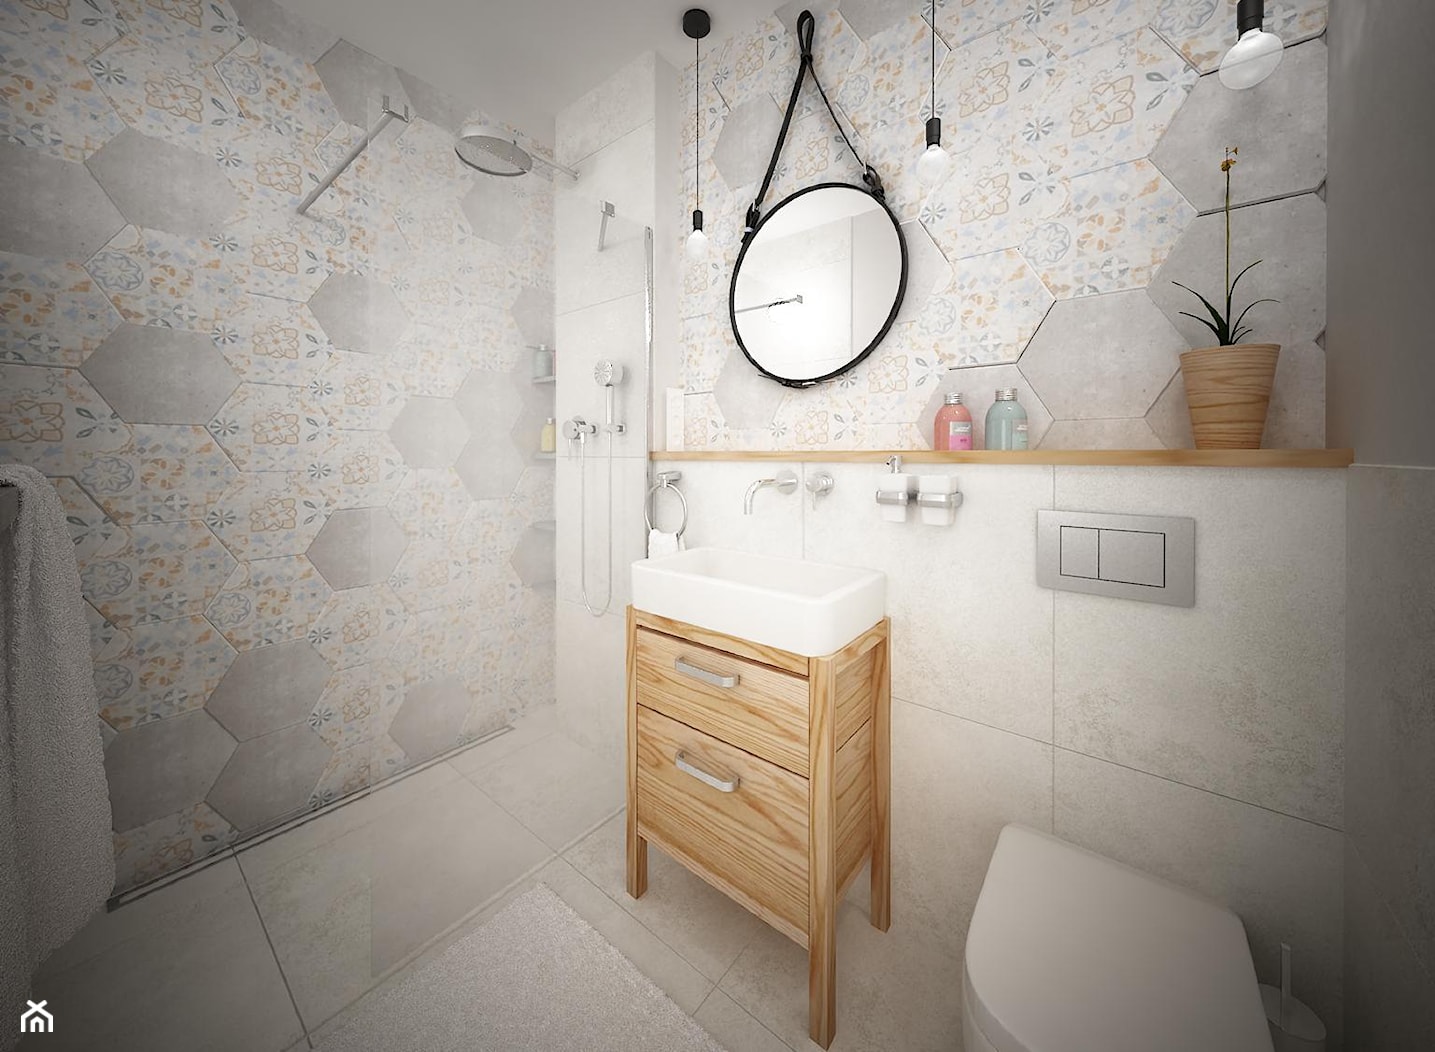 Łazienka w stylu skandynawskim z oprawą w stylu boho - zdjęcie od Inside Projekty Wnętrz. Małgorzata Więch - Homebook